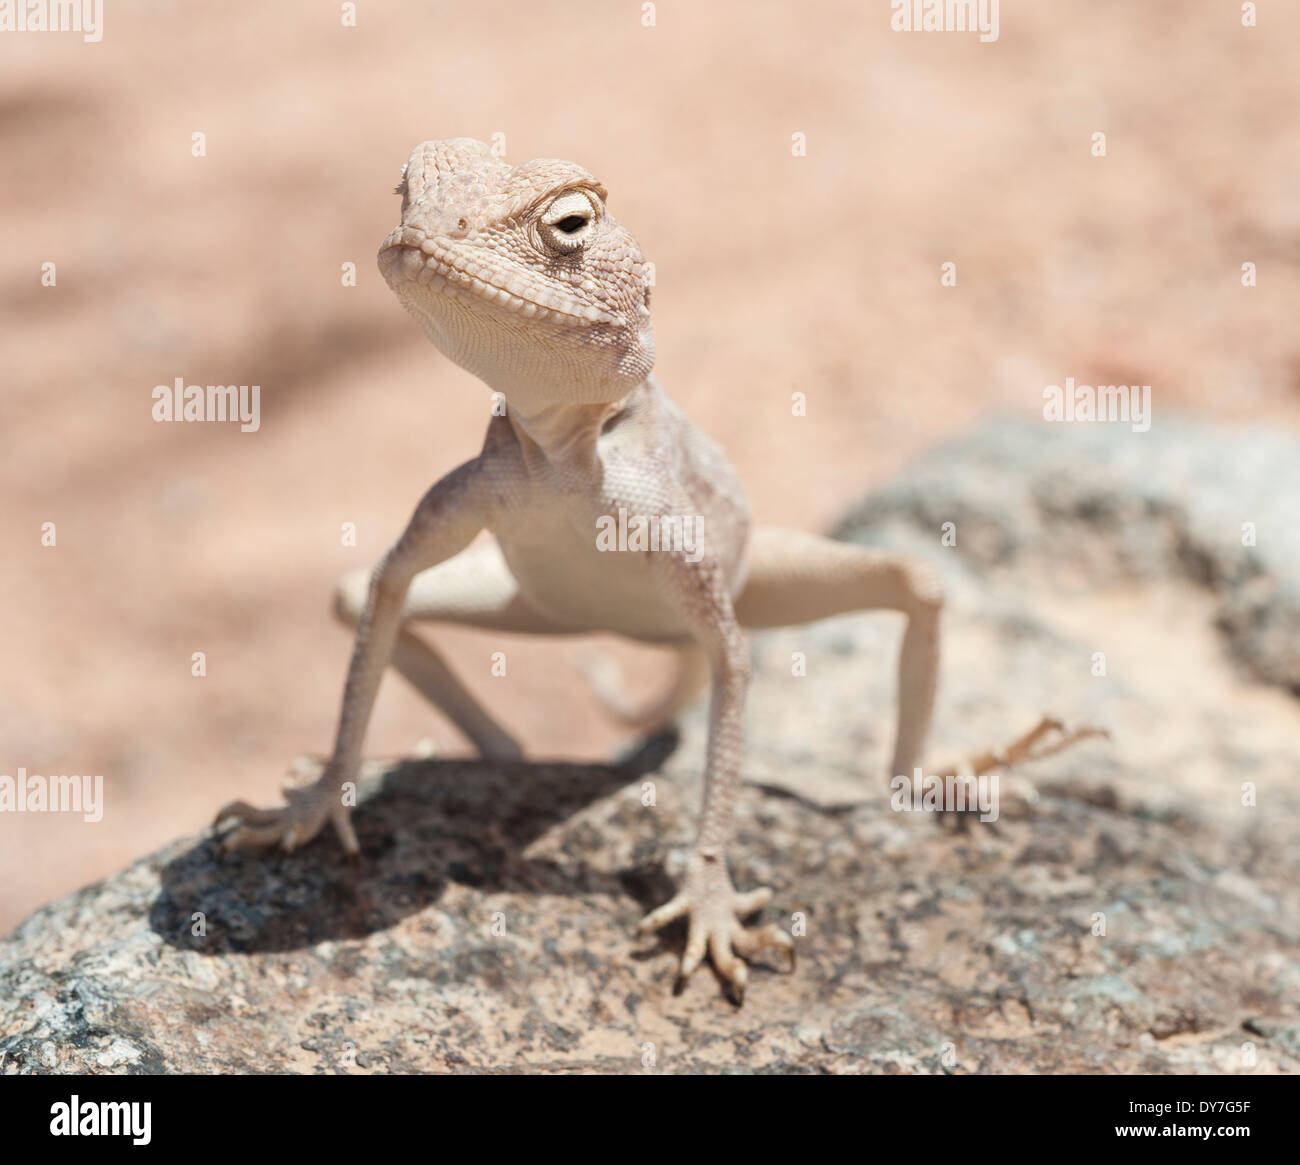 Libre d'un désert égyptien agama lizard sur l'environnement dans les zones arides Banque D'Images